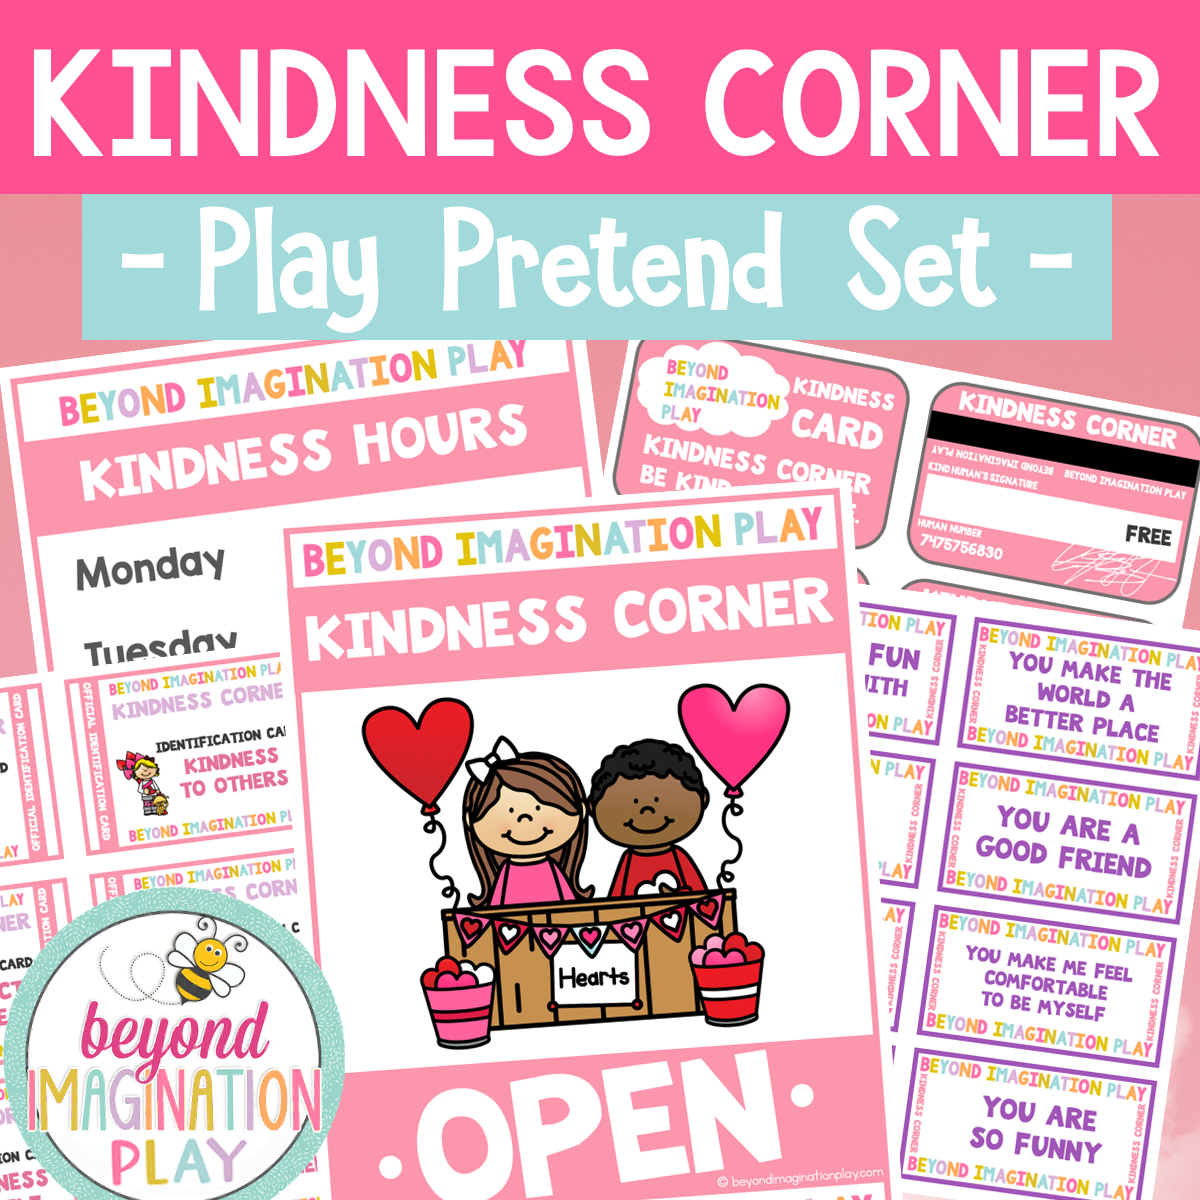 Kindness Corner - Play Pretend Set